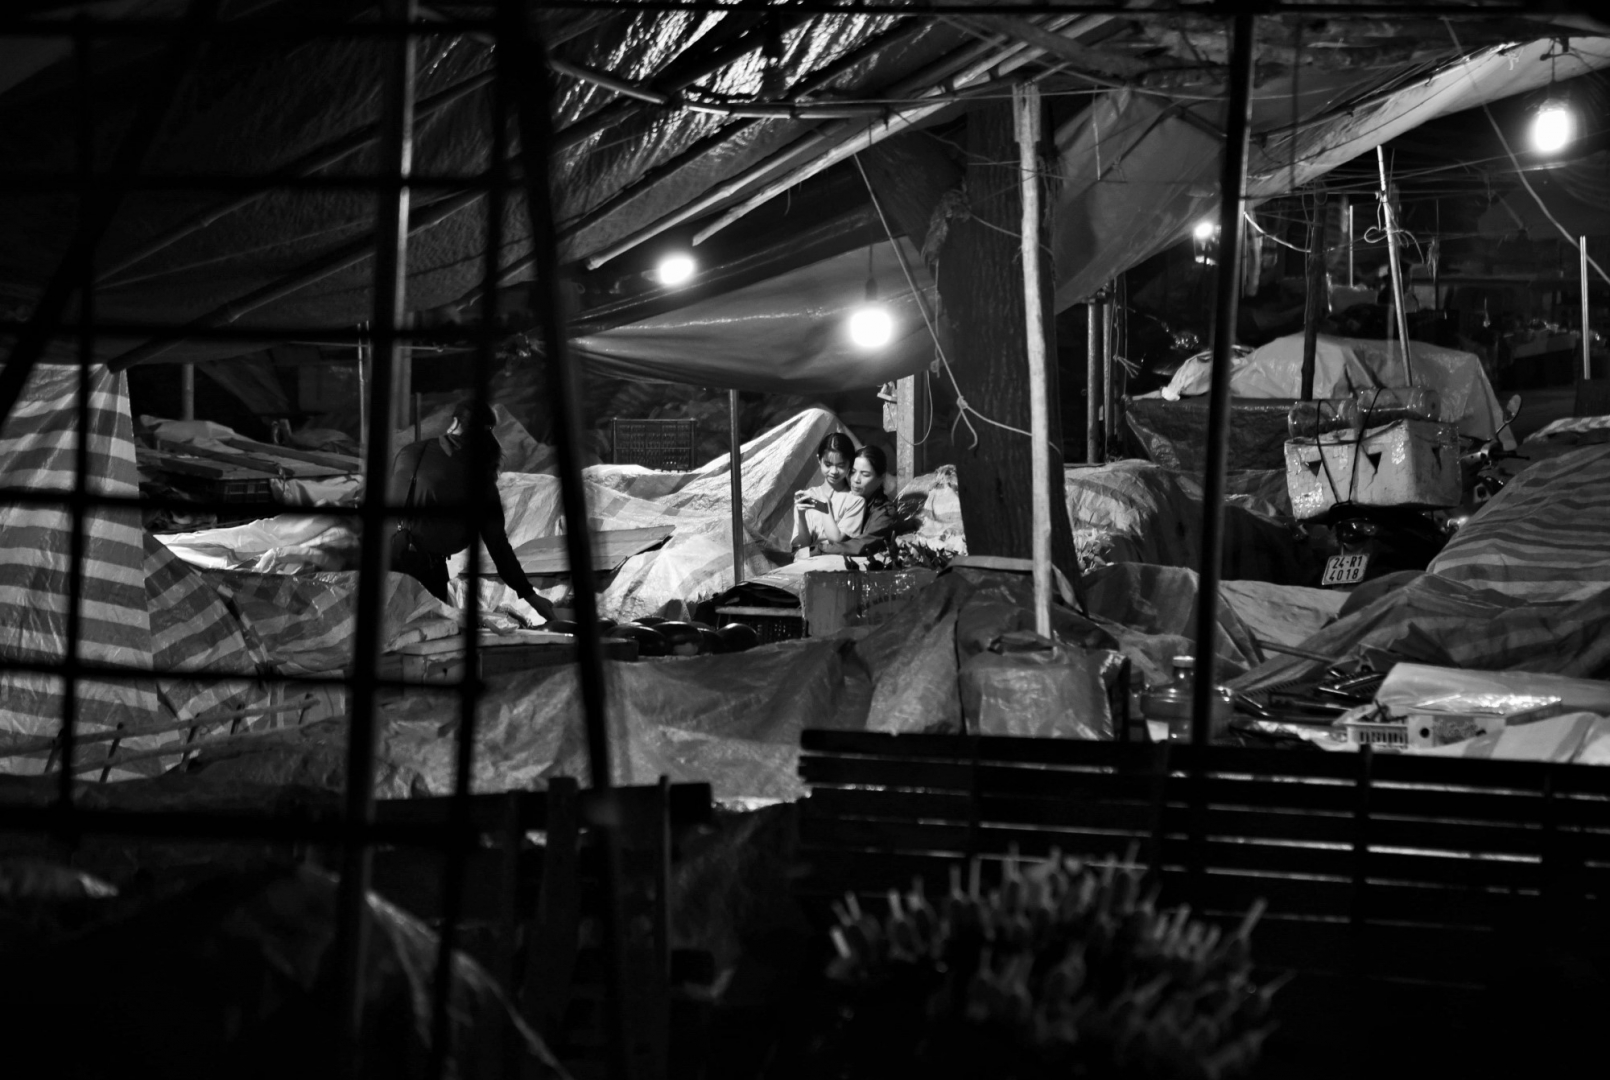 Последние посетители воскресного рынка в Бак Ха. Северный Вьетнам